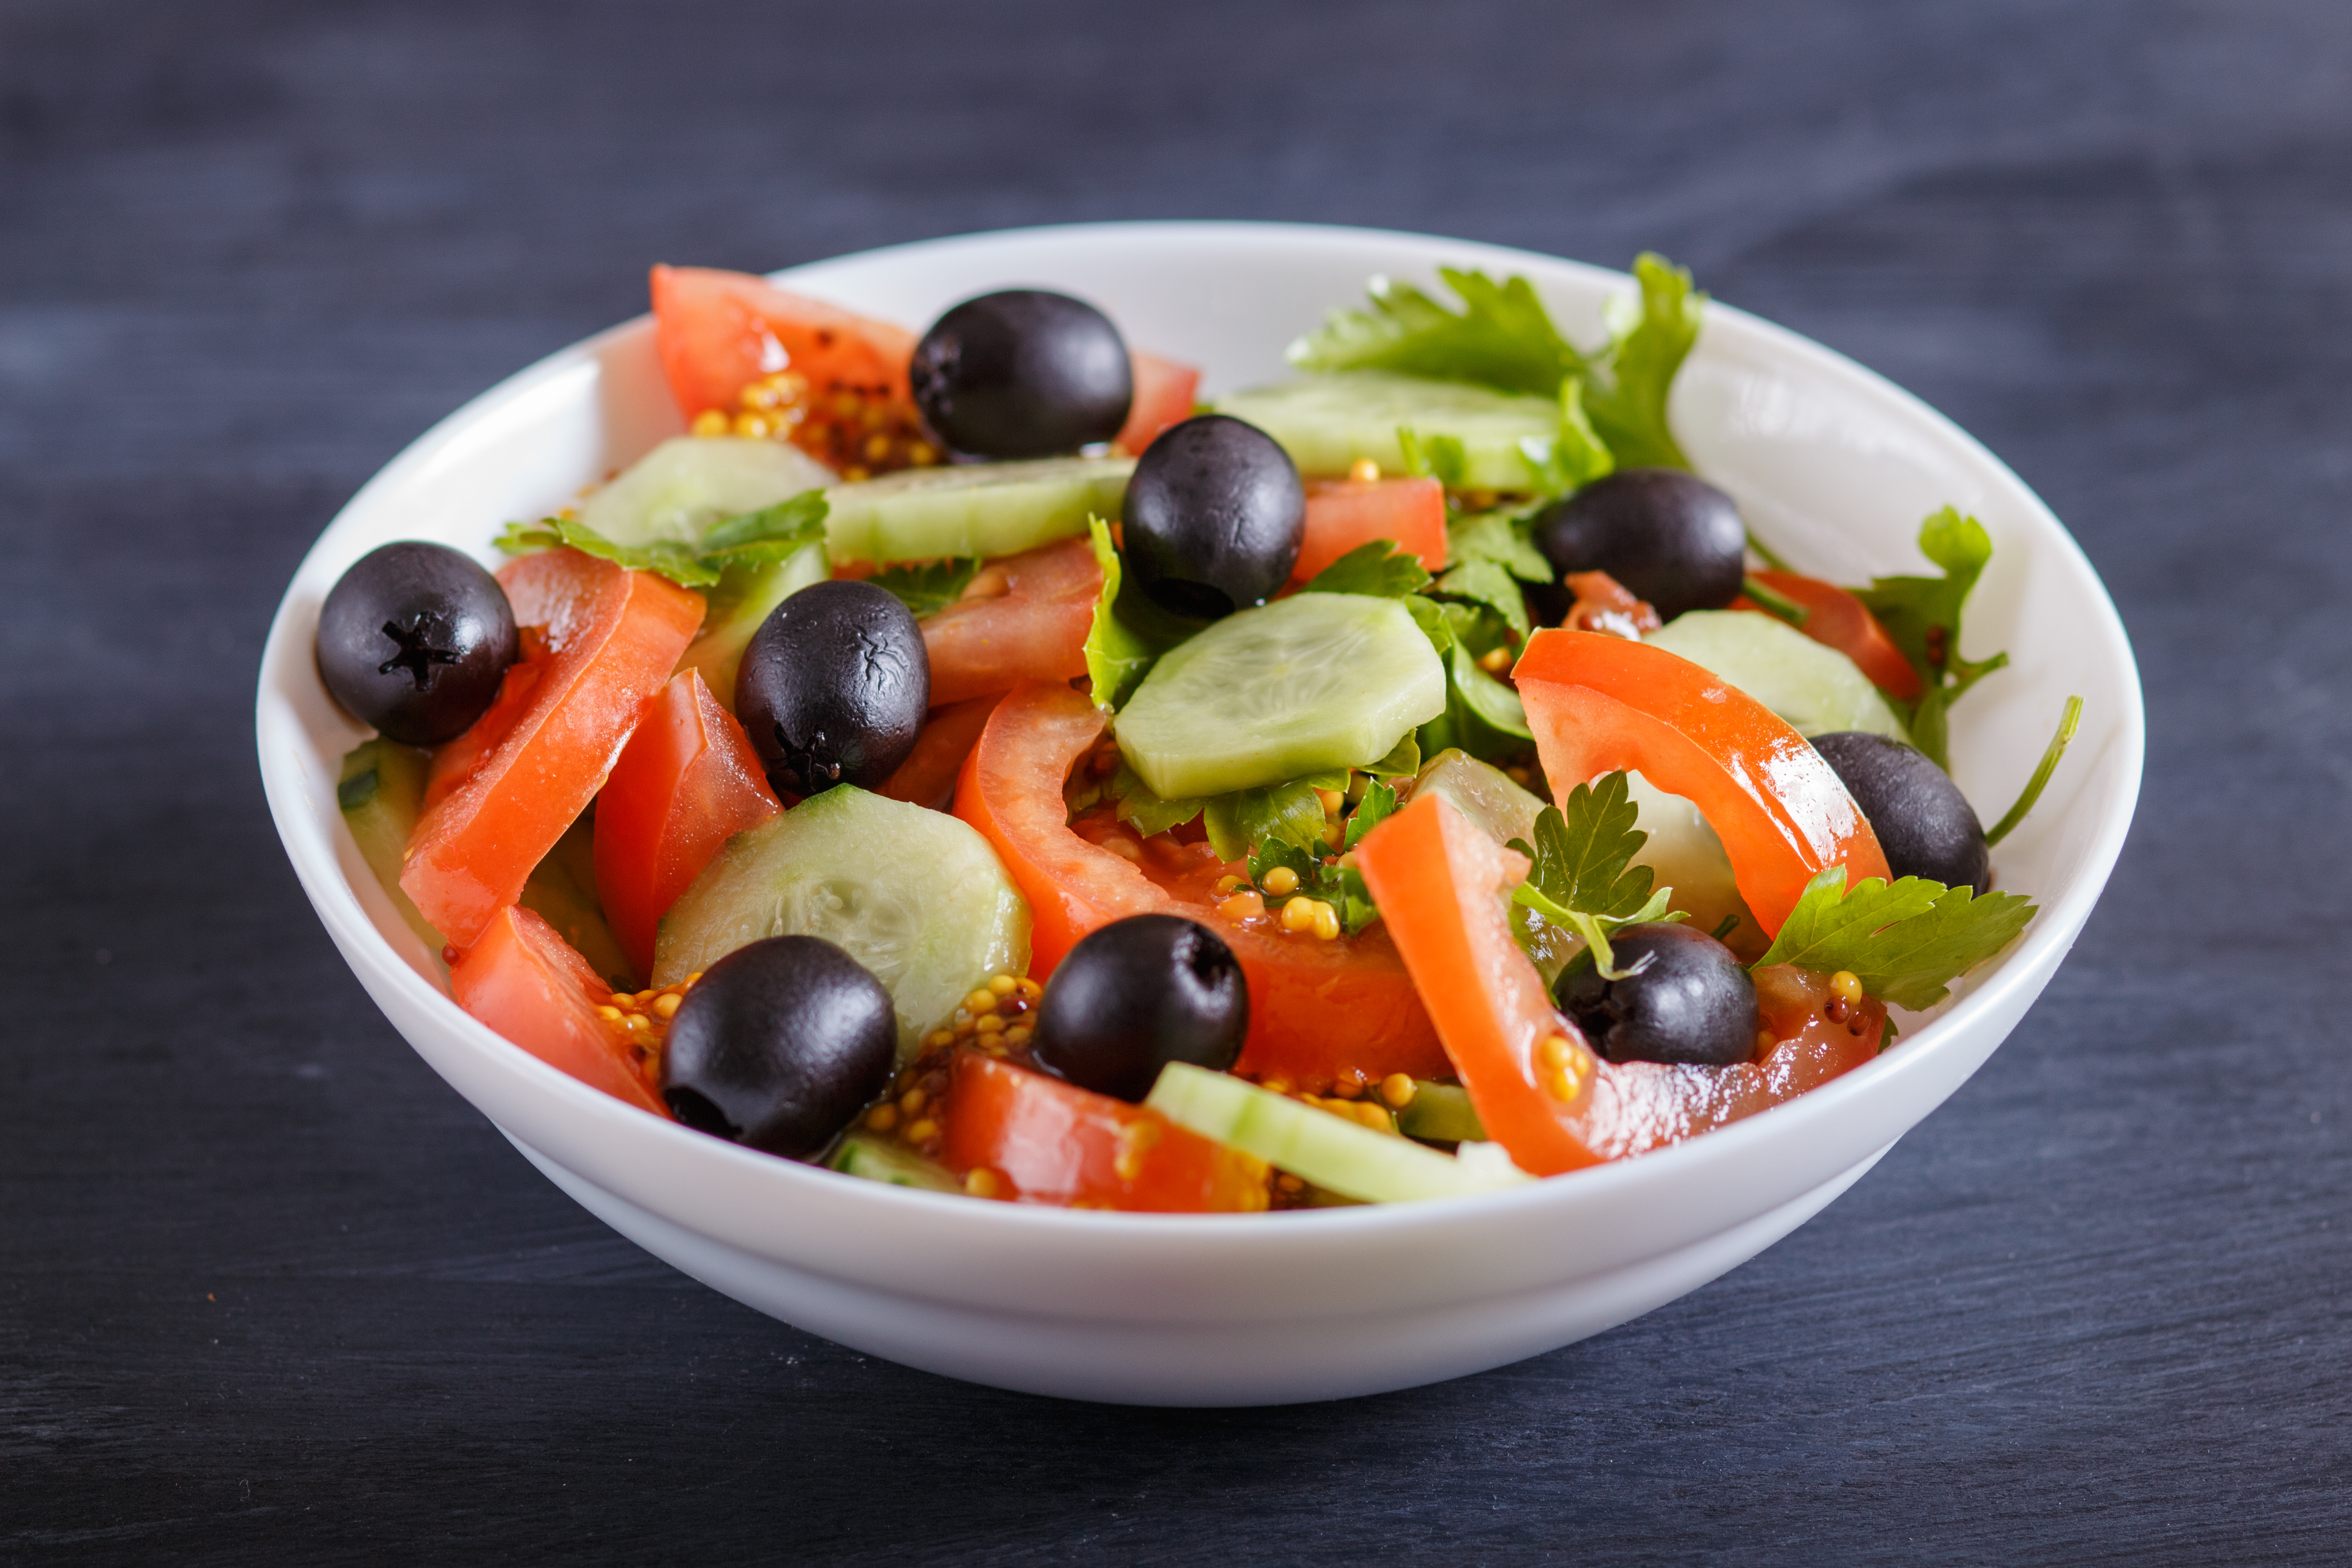 Agurk, tomat og oliven er blant de matvarene som kan brukes ved irritabel tarmsyndrom.